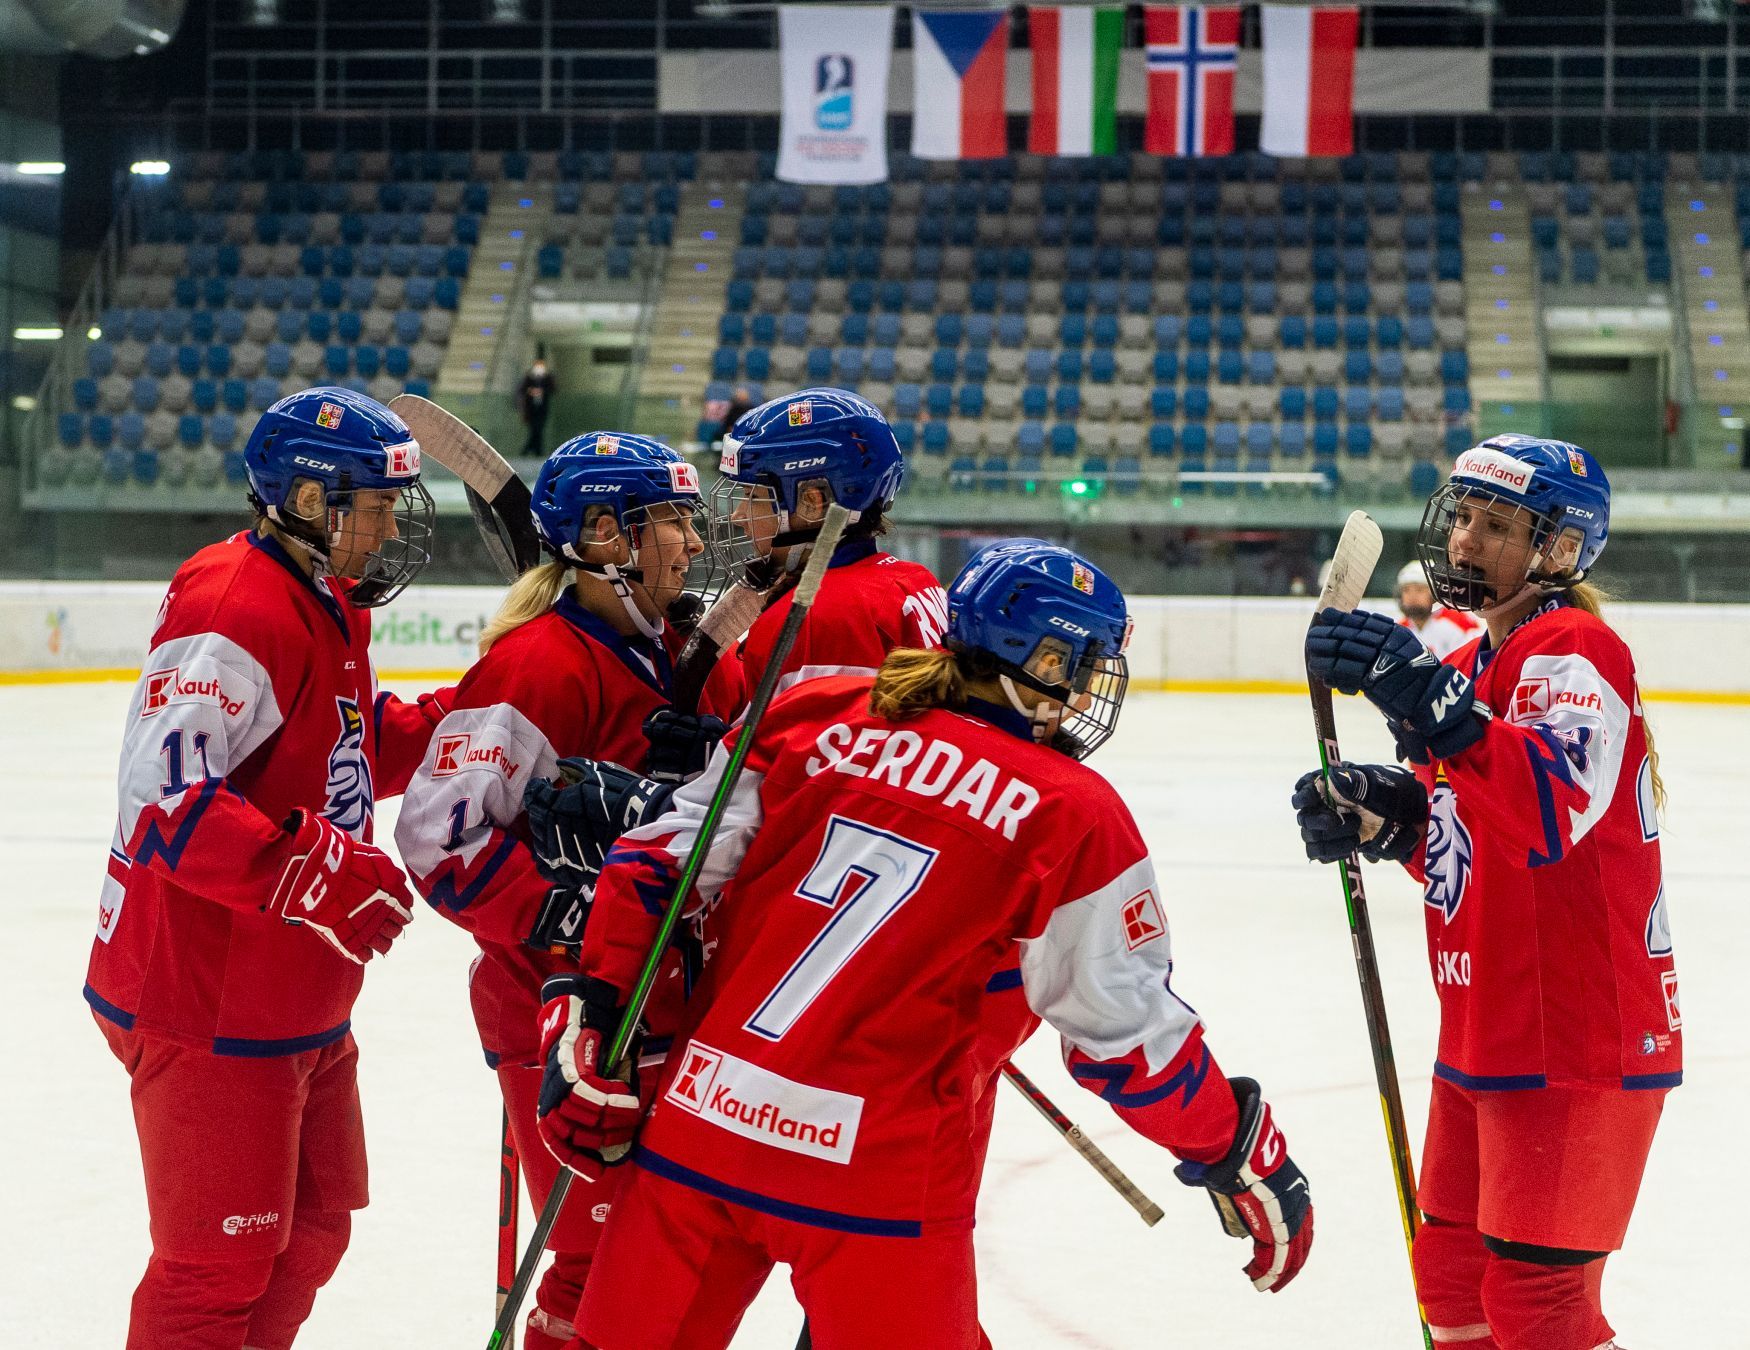 České hokejistky se radují z vítězství nad Polskem v olympijské kvalifikaci